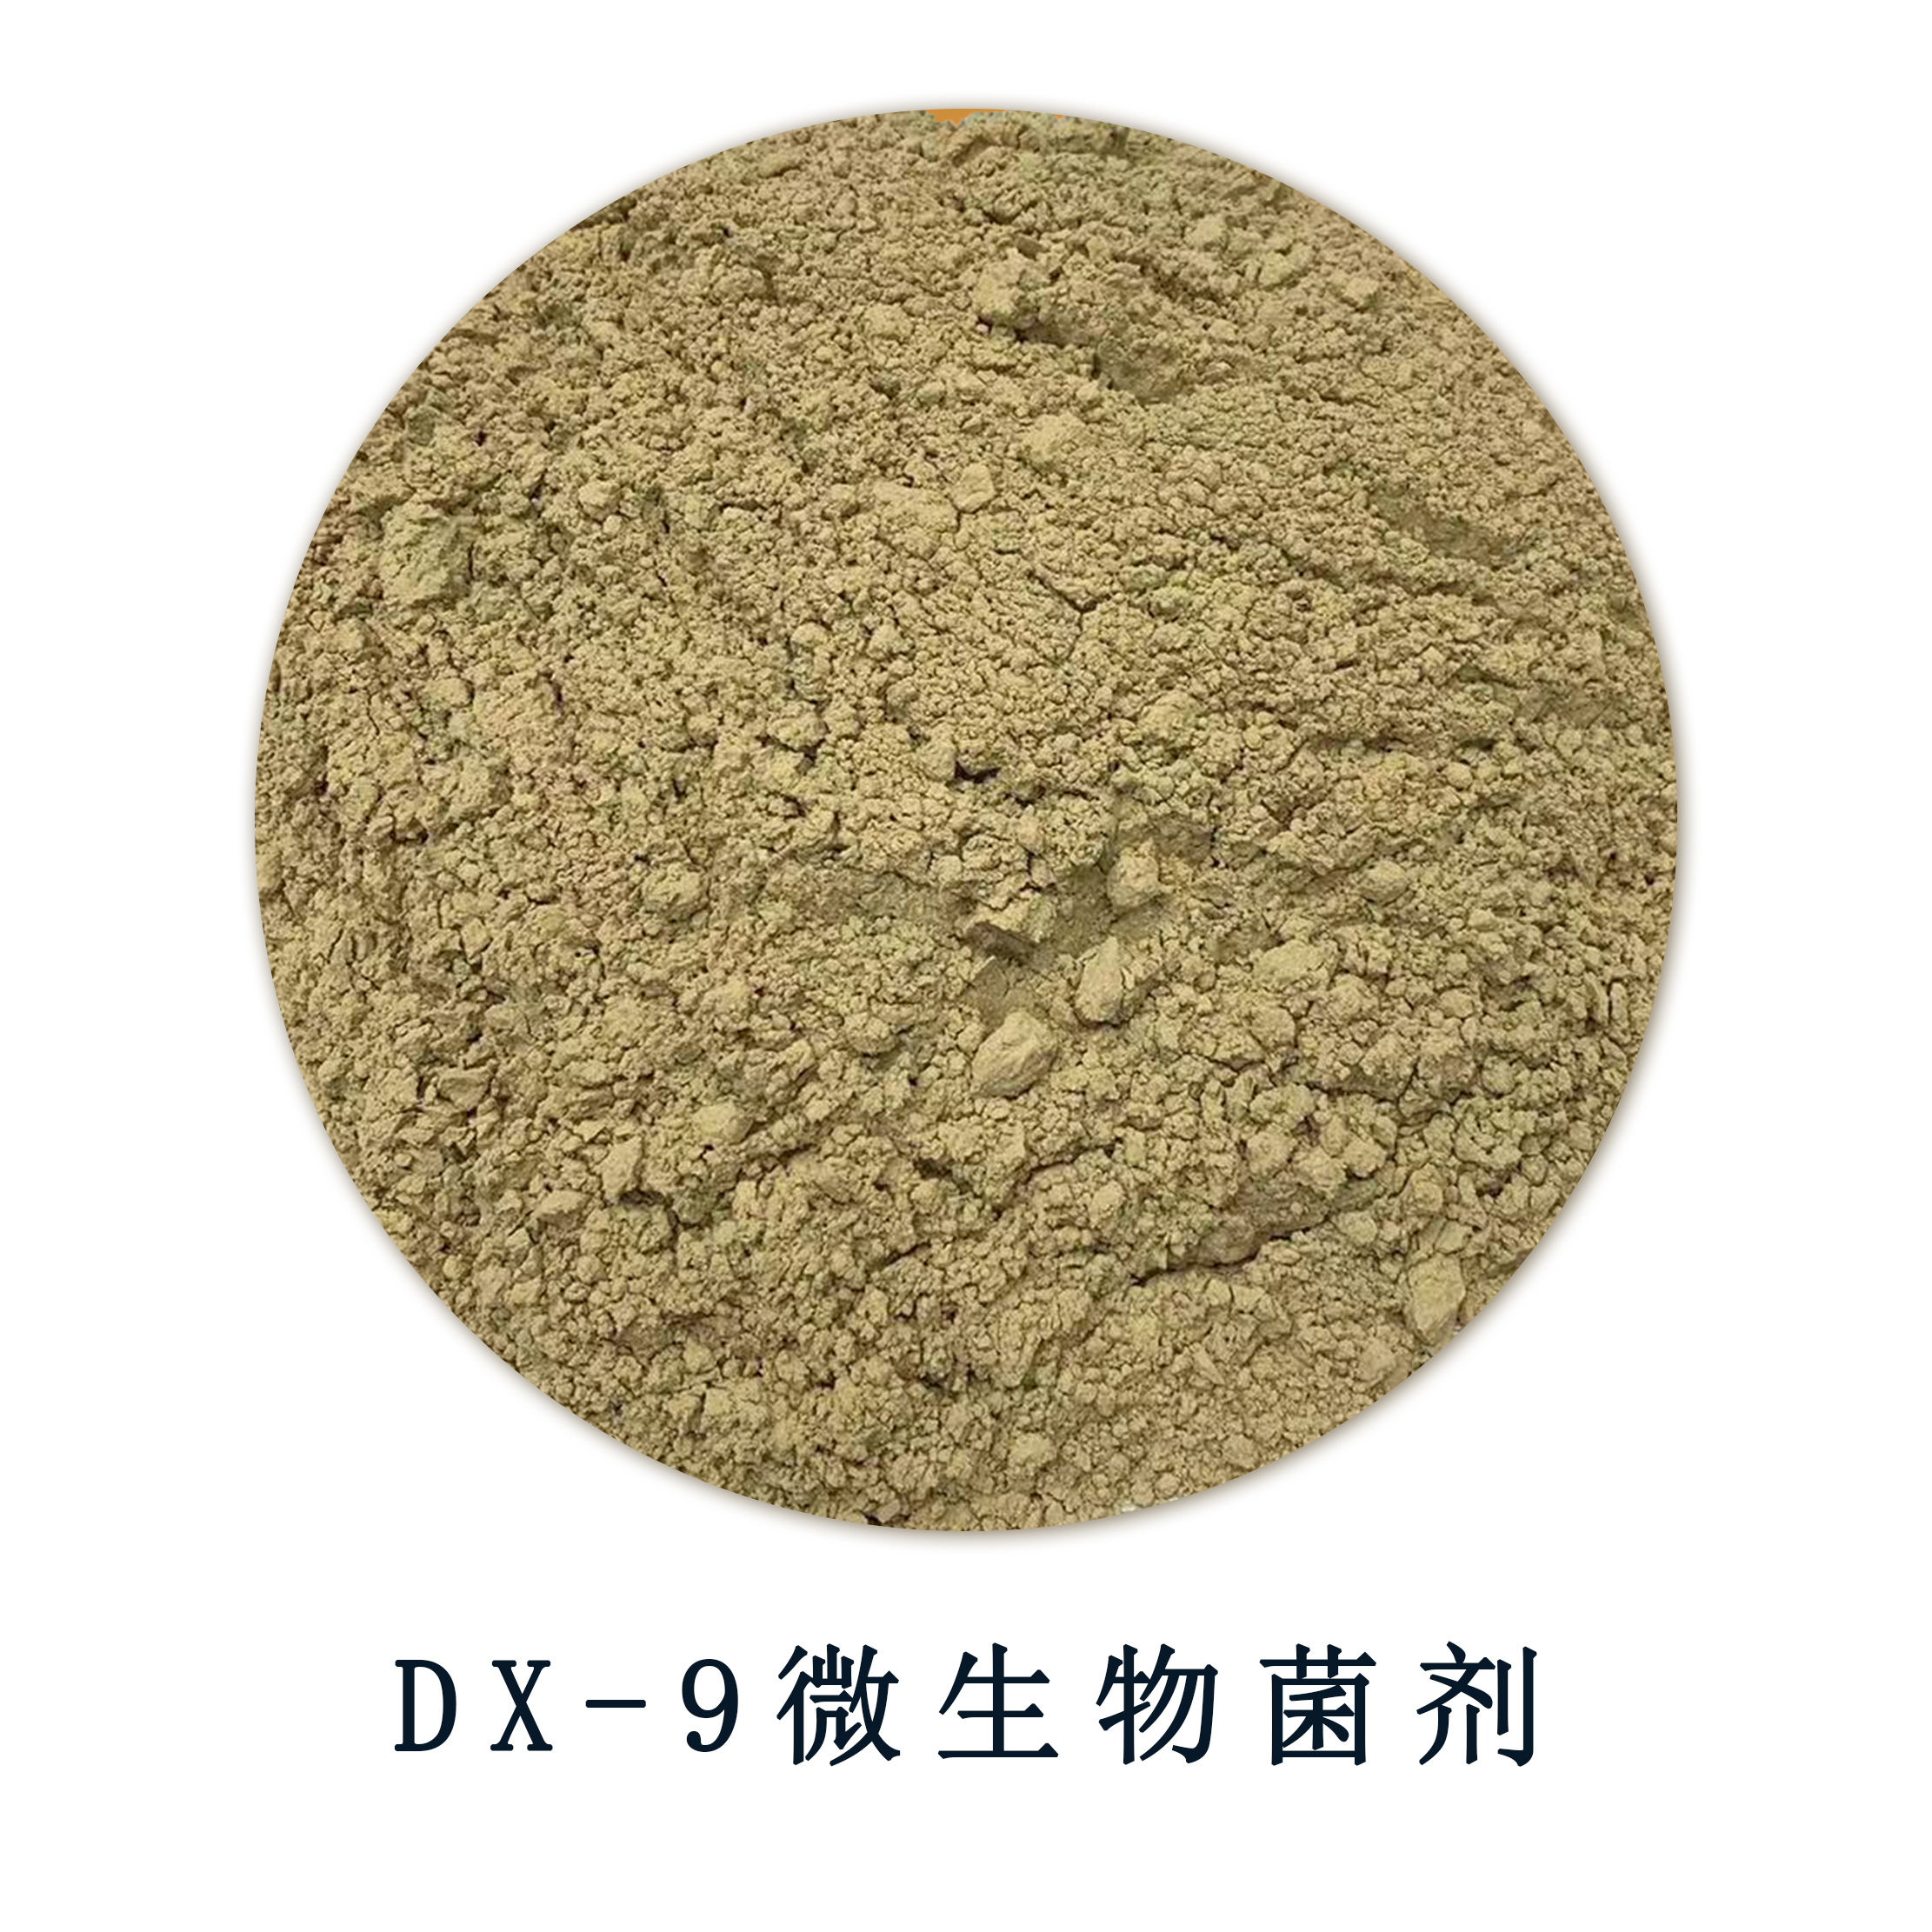 DX-9微生物菌剂.jpg